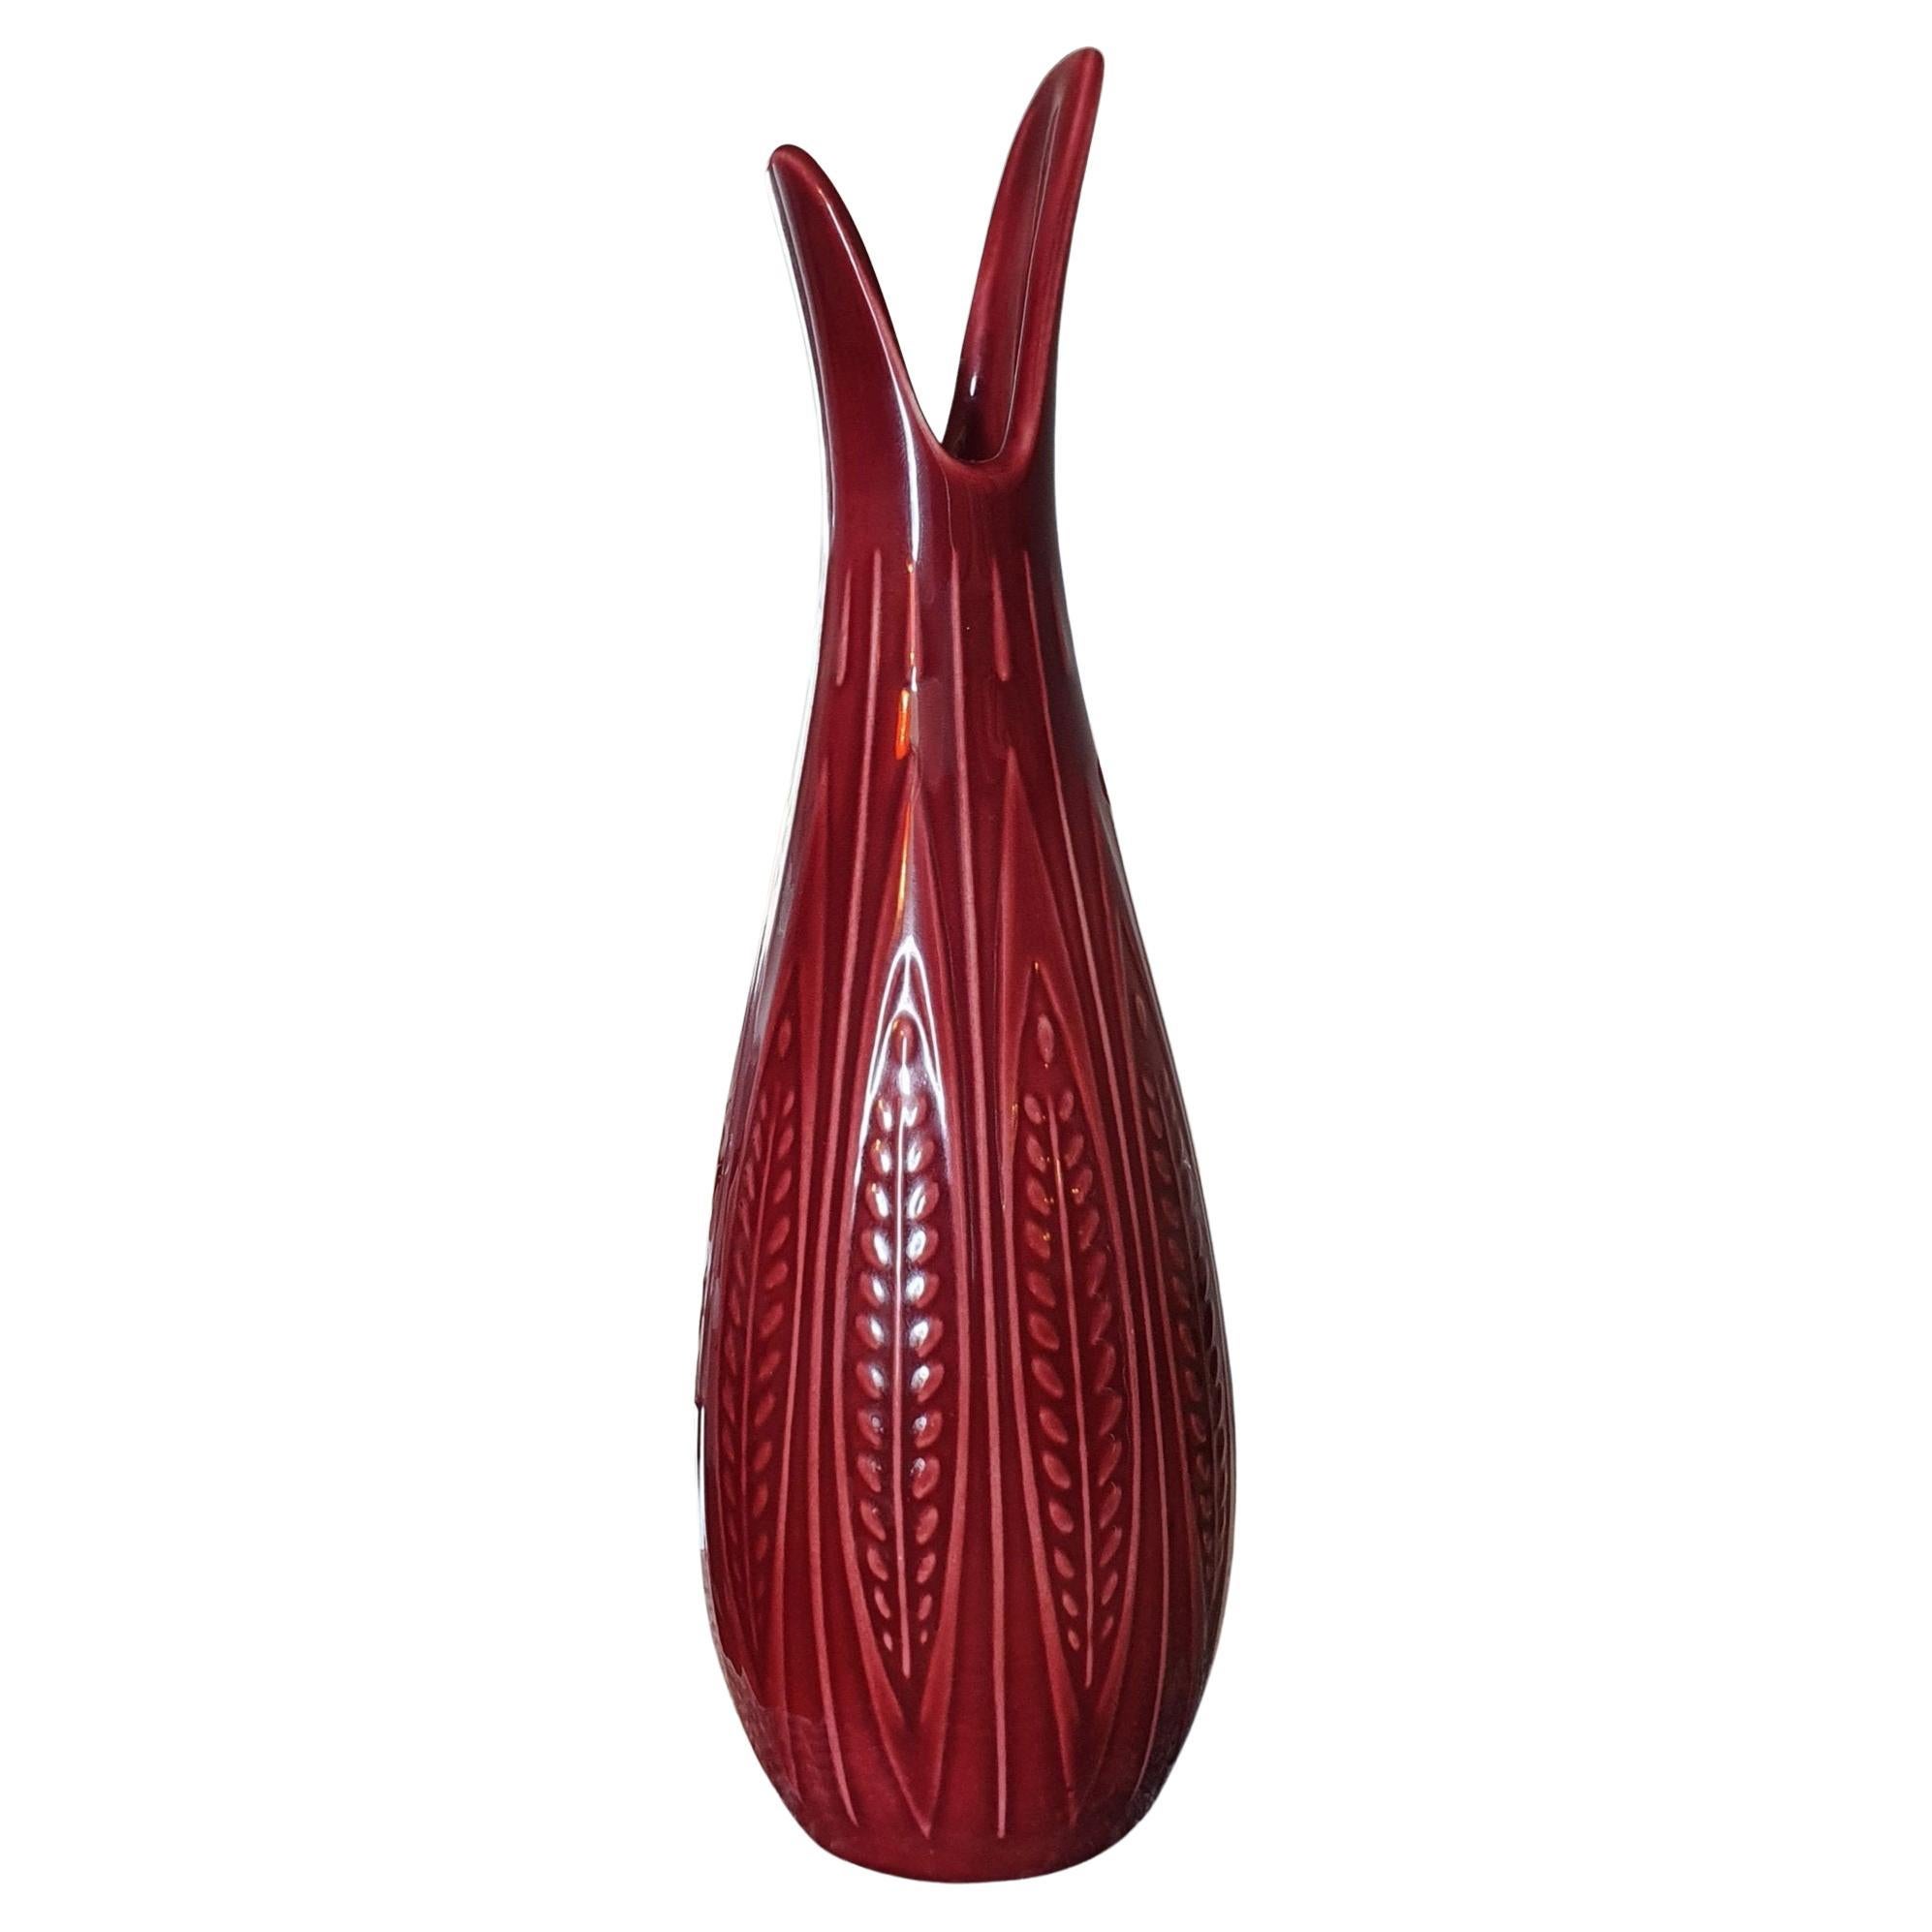  Gunnar Nylund Red Ceramic Vase for Rörstrand  Sweden For Sale